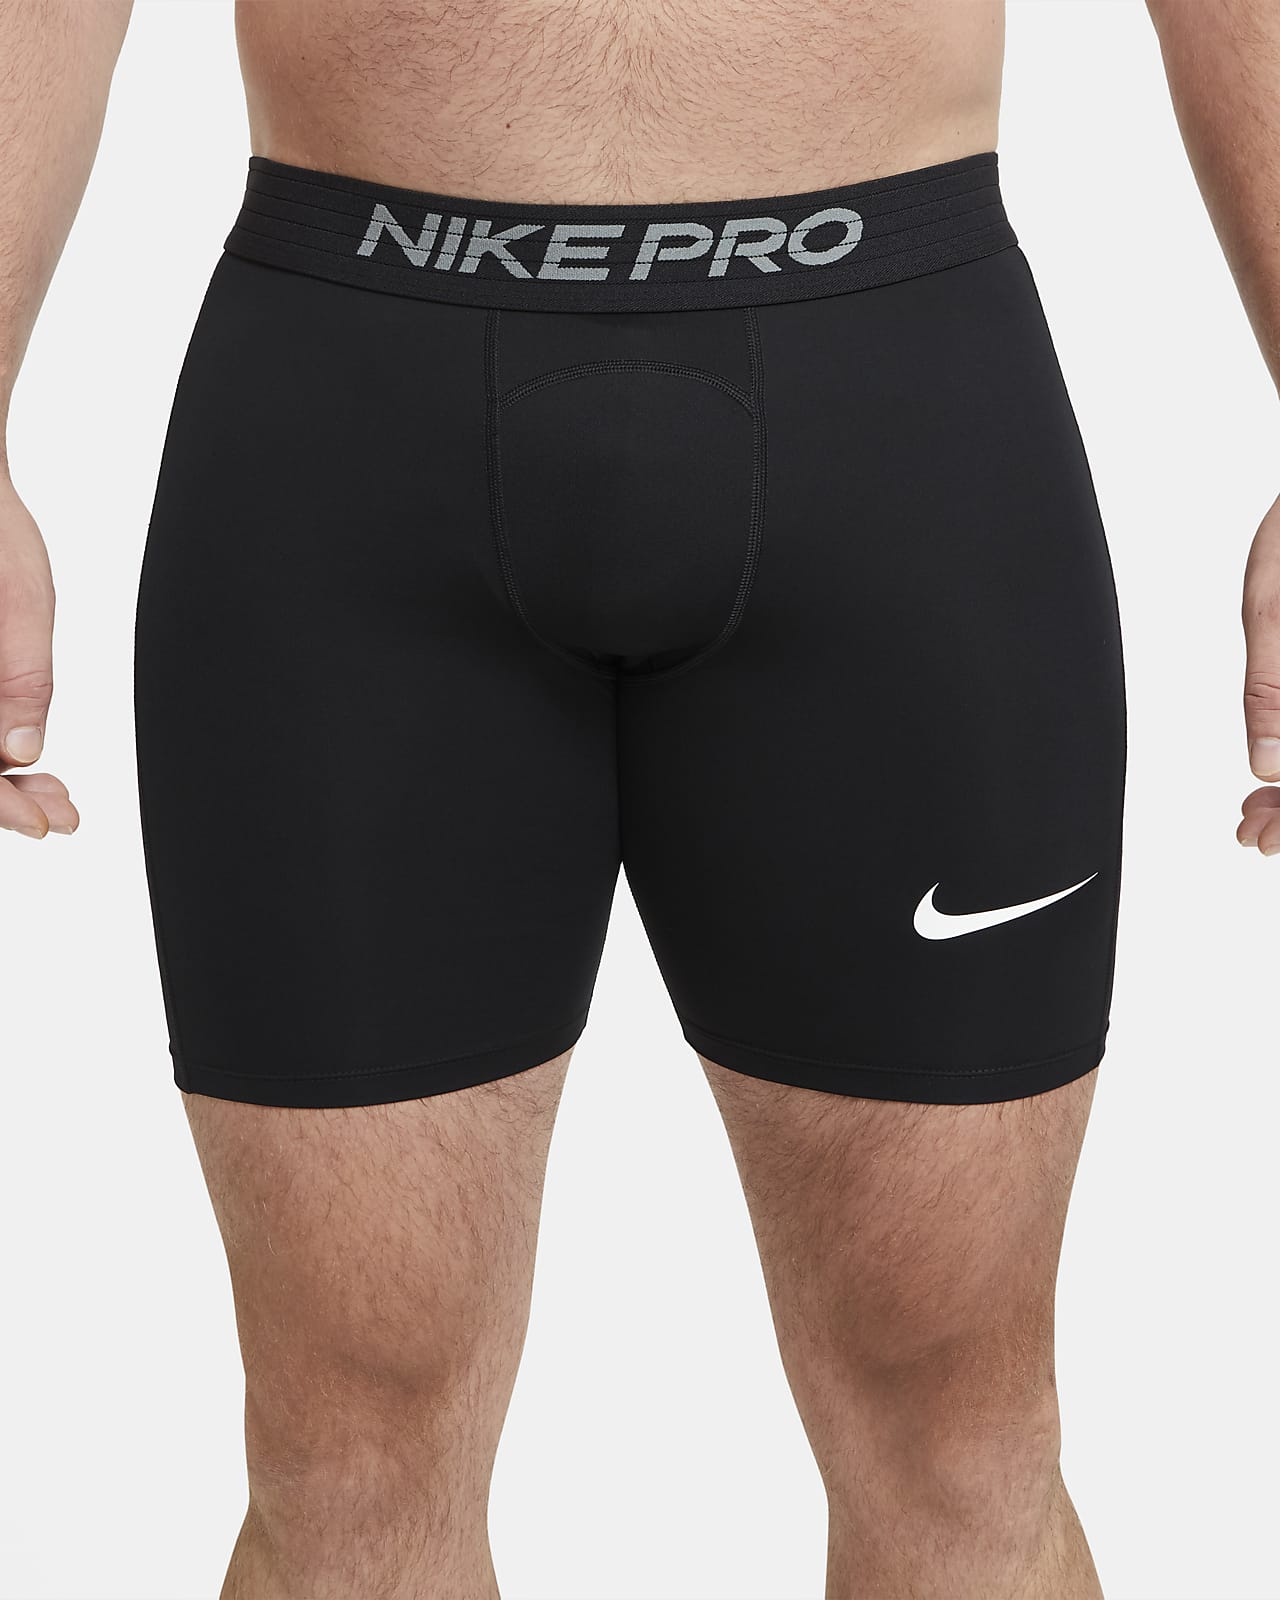 Shetland Biggest his Nike Pro Men's Shorts. Nike.com